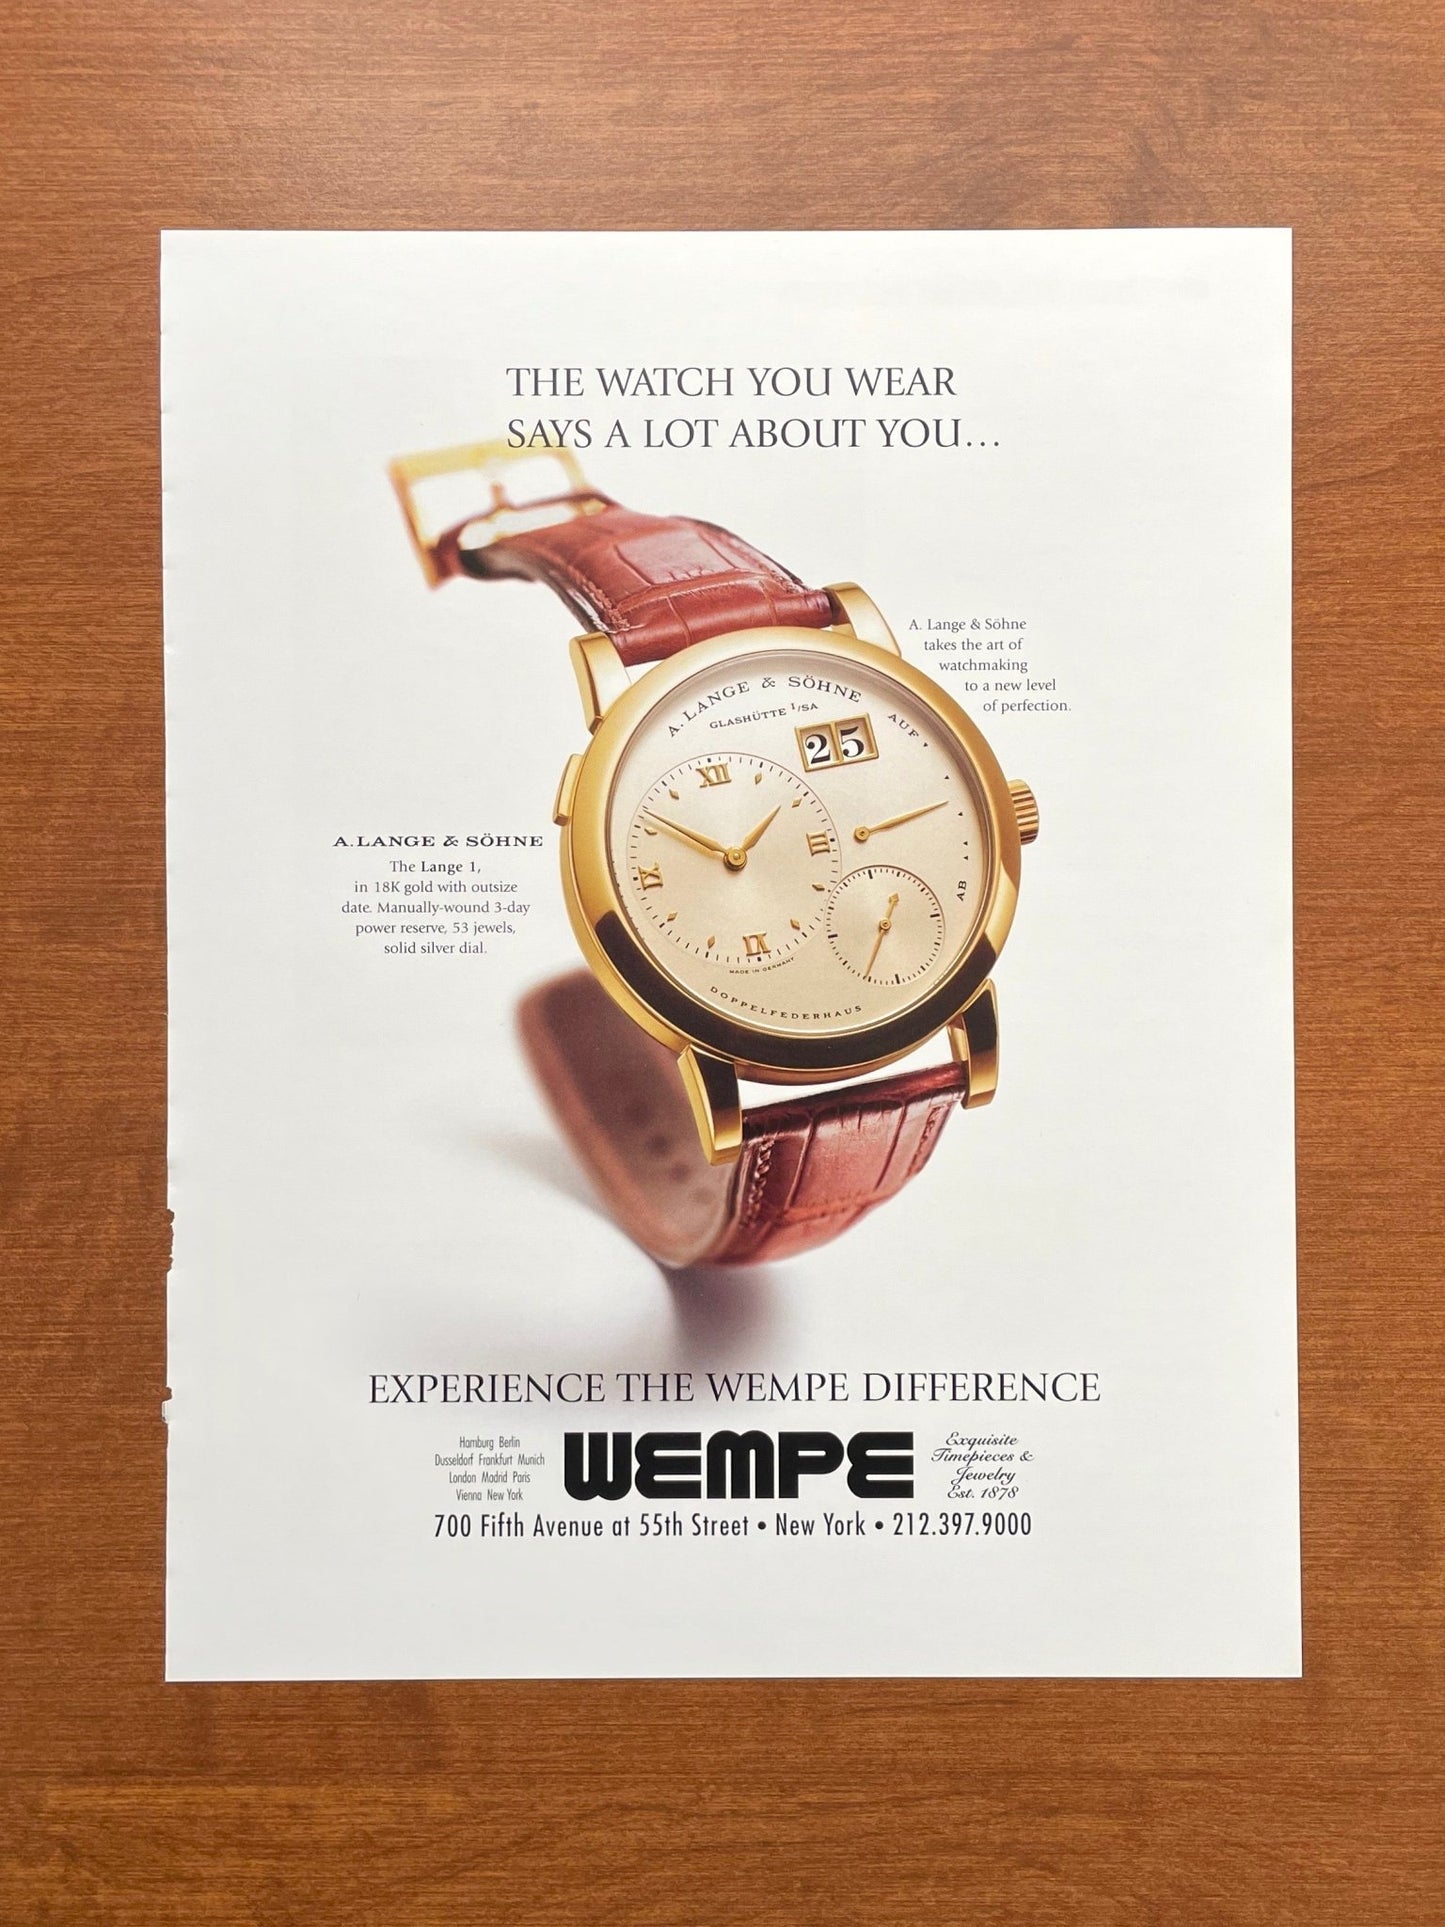 2000 A. Lange & Sohne Lange 1 at WEMPE Advertisement